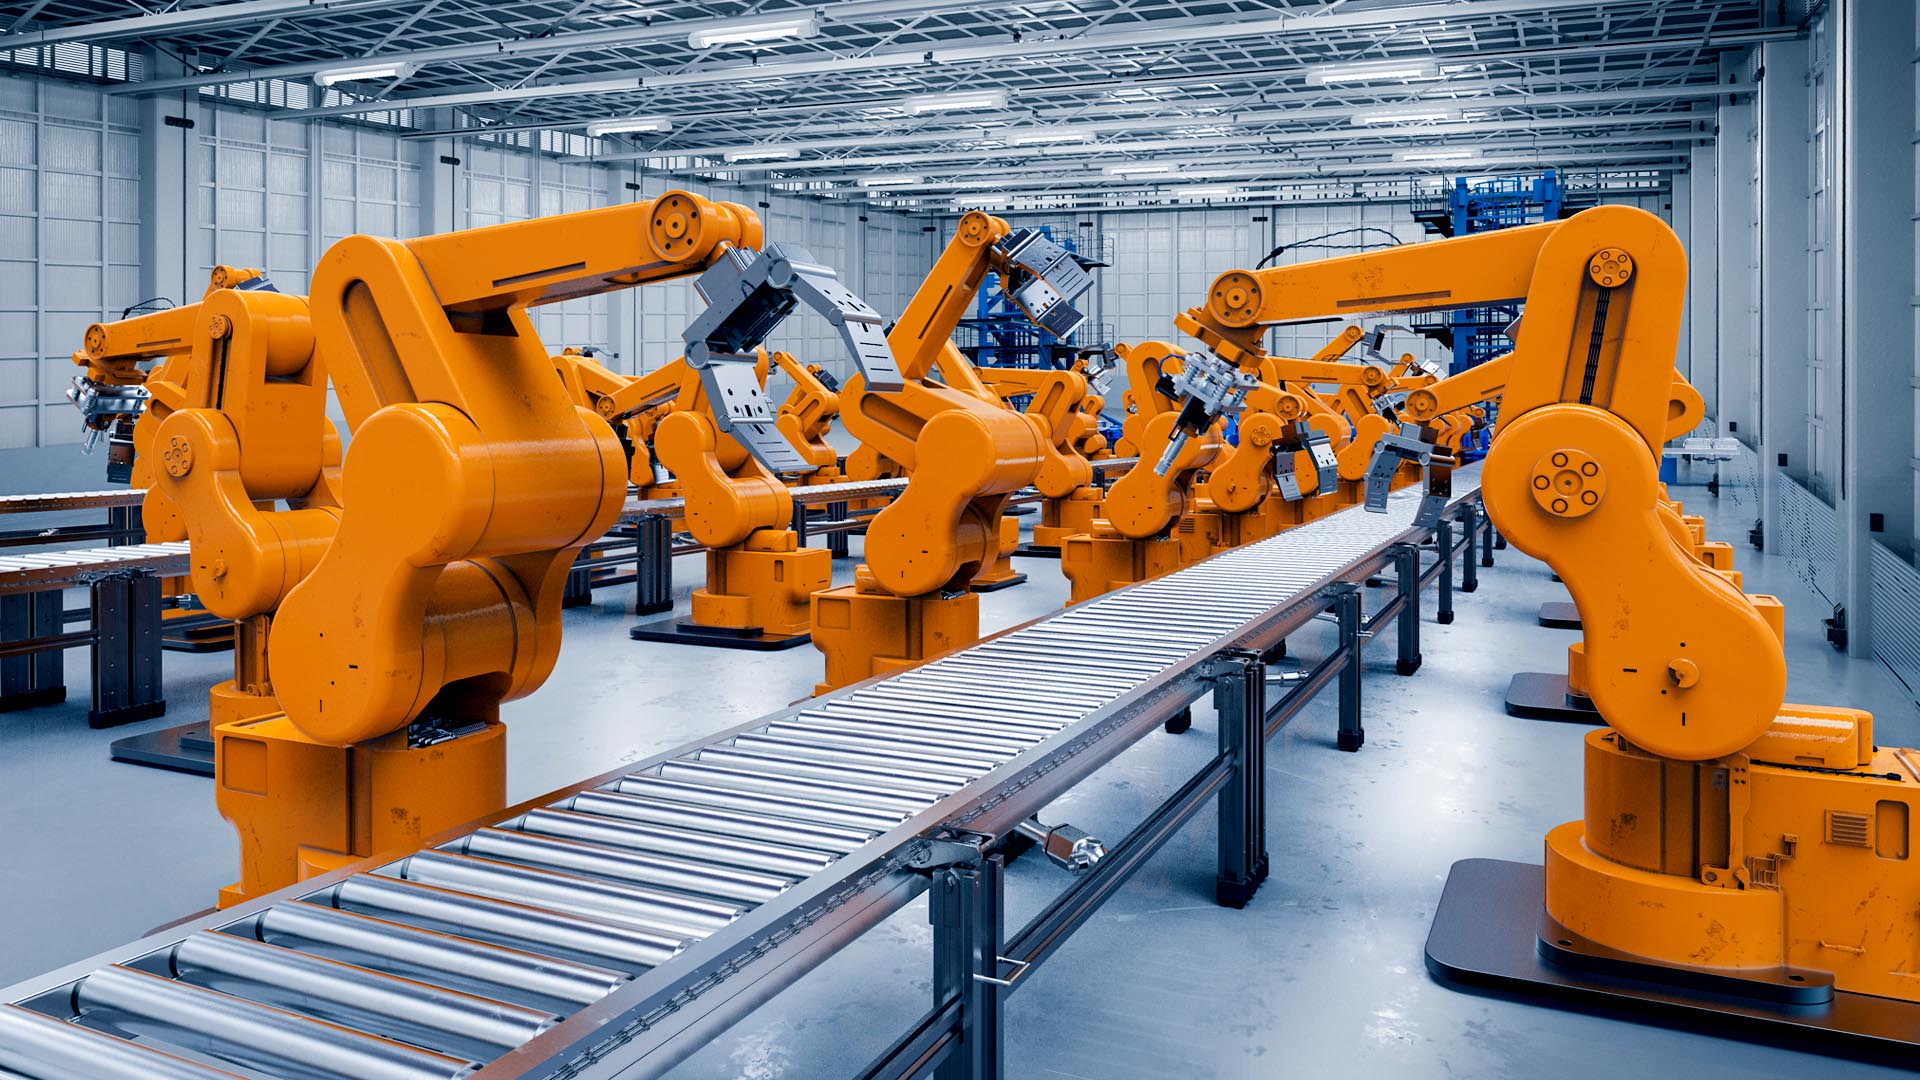 Vai trò của IoT và AI trong ngành công nghiệp sản xuất